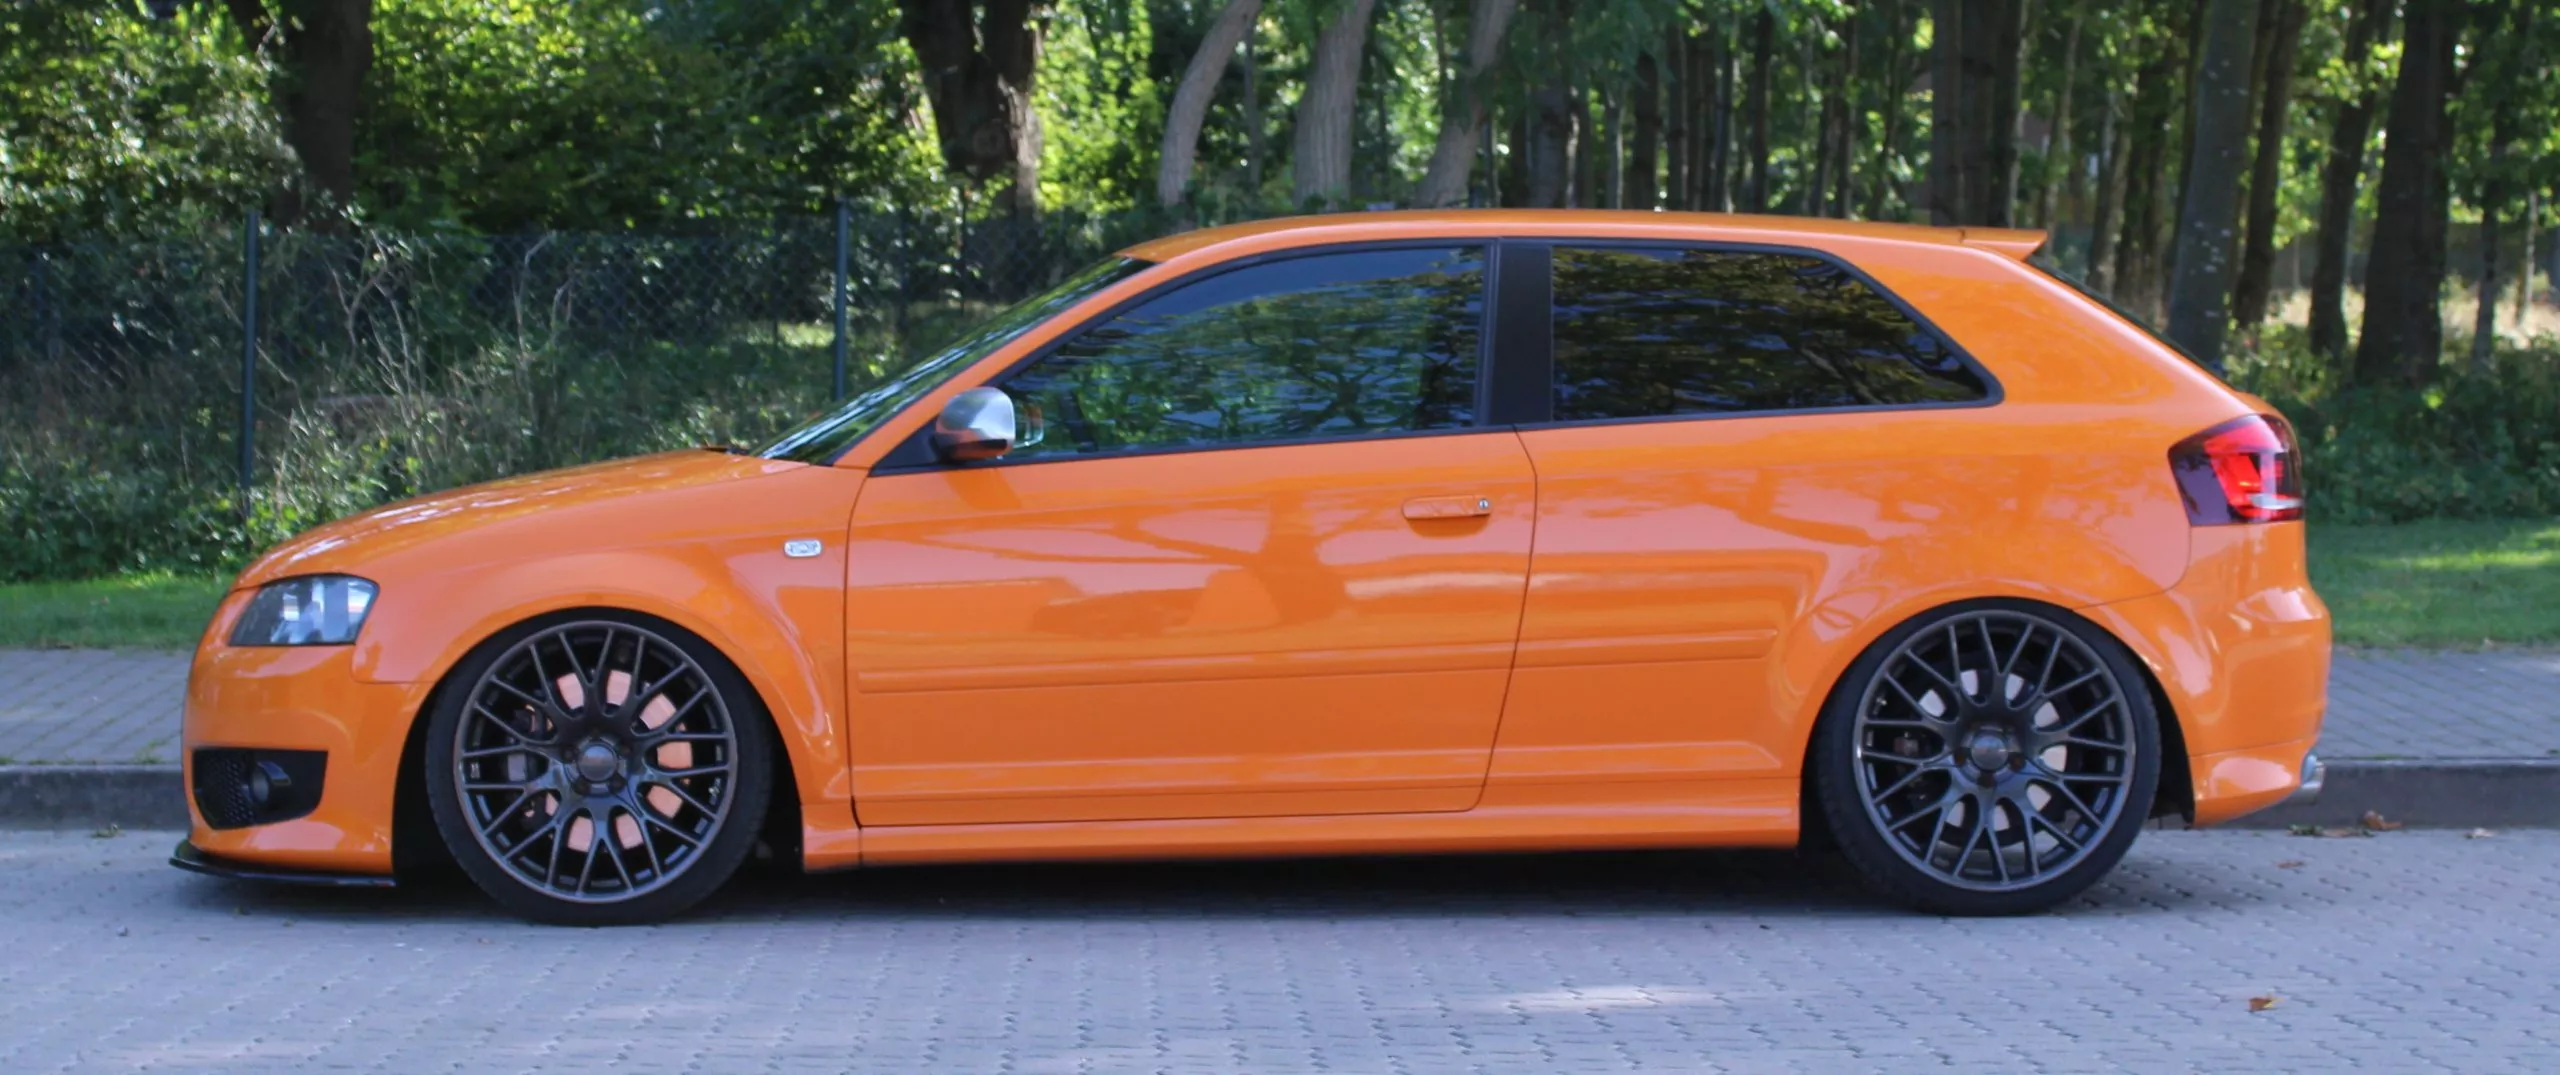 Audi – A3 – Orange – DIEWE – Impatto – Schwarz – Keine Angabe